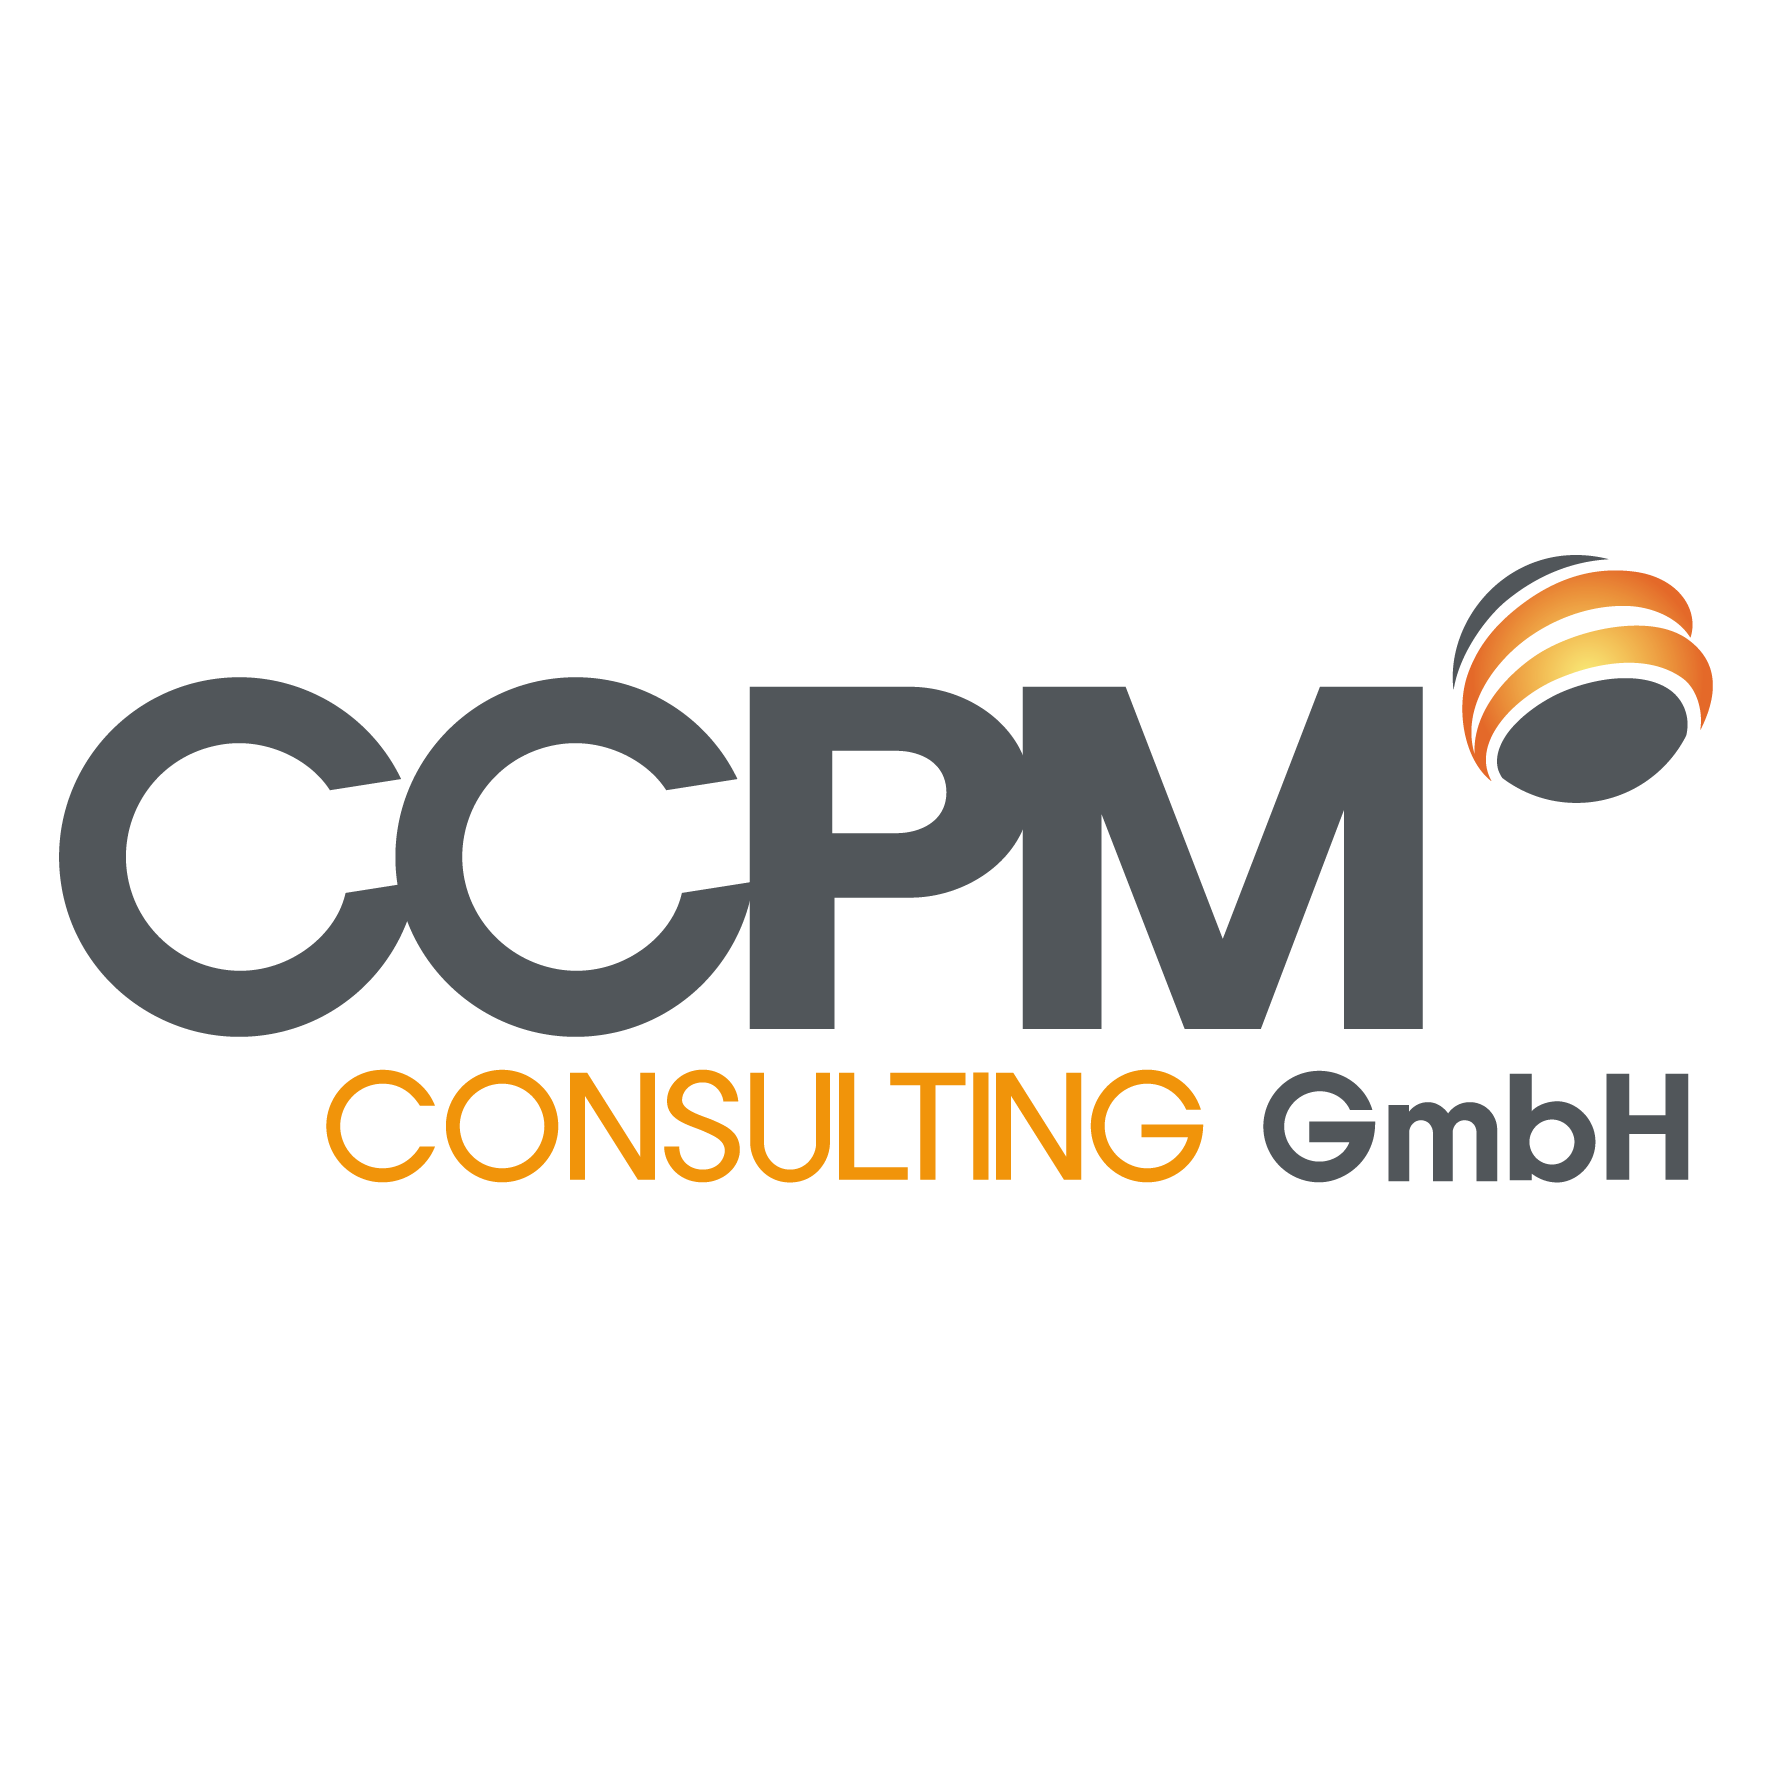 Logo Das CCPM (Critical Chain Project Management) steuert Ihre Multiprojekt-Landschaft so, daß 95% der Projekte pünktlich fertig werden. Viele Unternehmen steigern ihren Projektdurchsatz bei gleicher Belegschaft um 30%, indem sie die Projektlaufzeiten erheblich verkürzen.